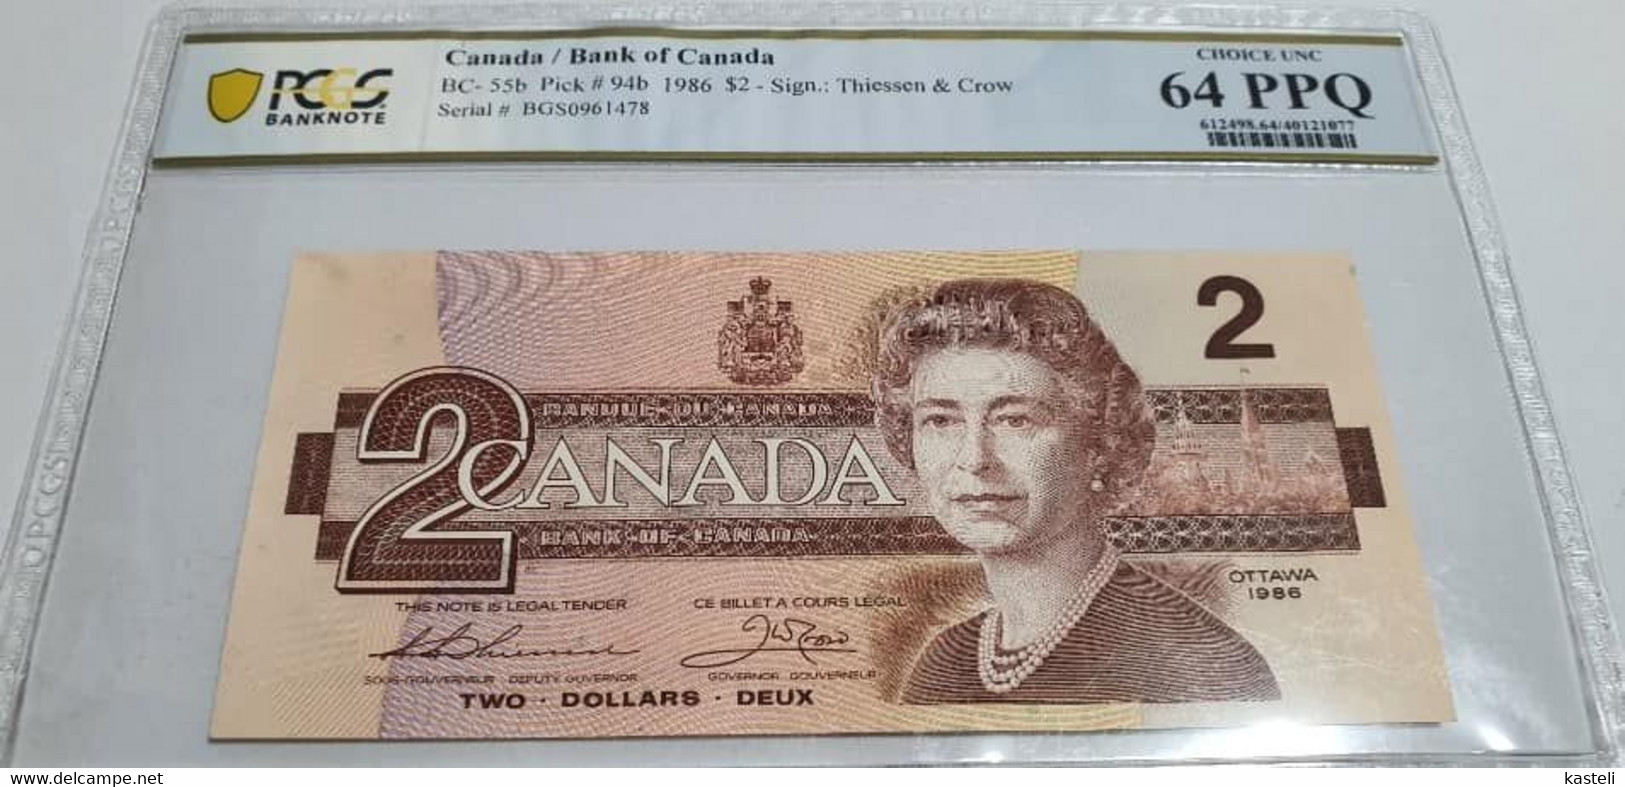 Jamaica,5$ - Canada 2$ - Nea Zealanda 3$ -  Bolivia .5 Centavos Or 50 000 Pesos, Bolivia 1987  Lot Of 4  Gradate Bilete - Jamaica